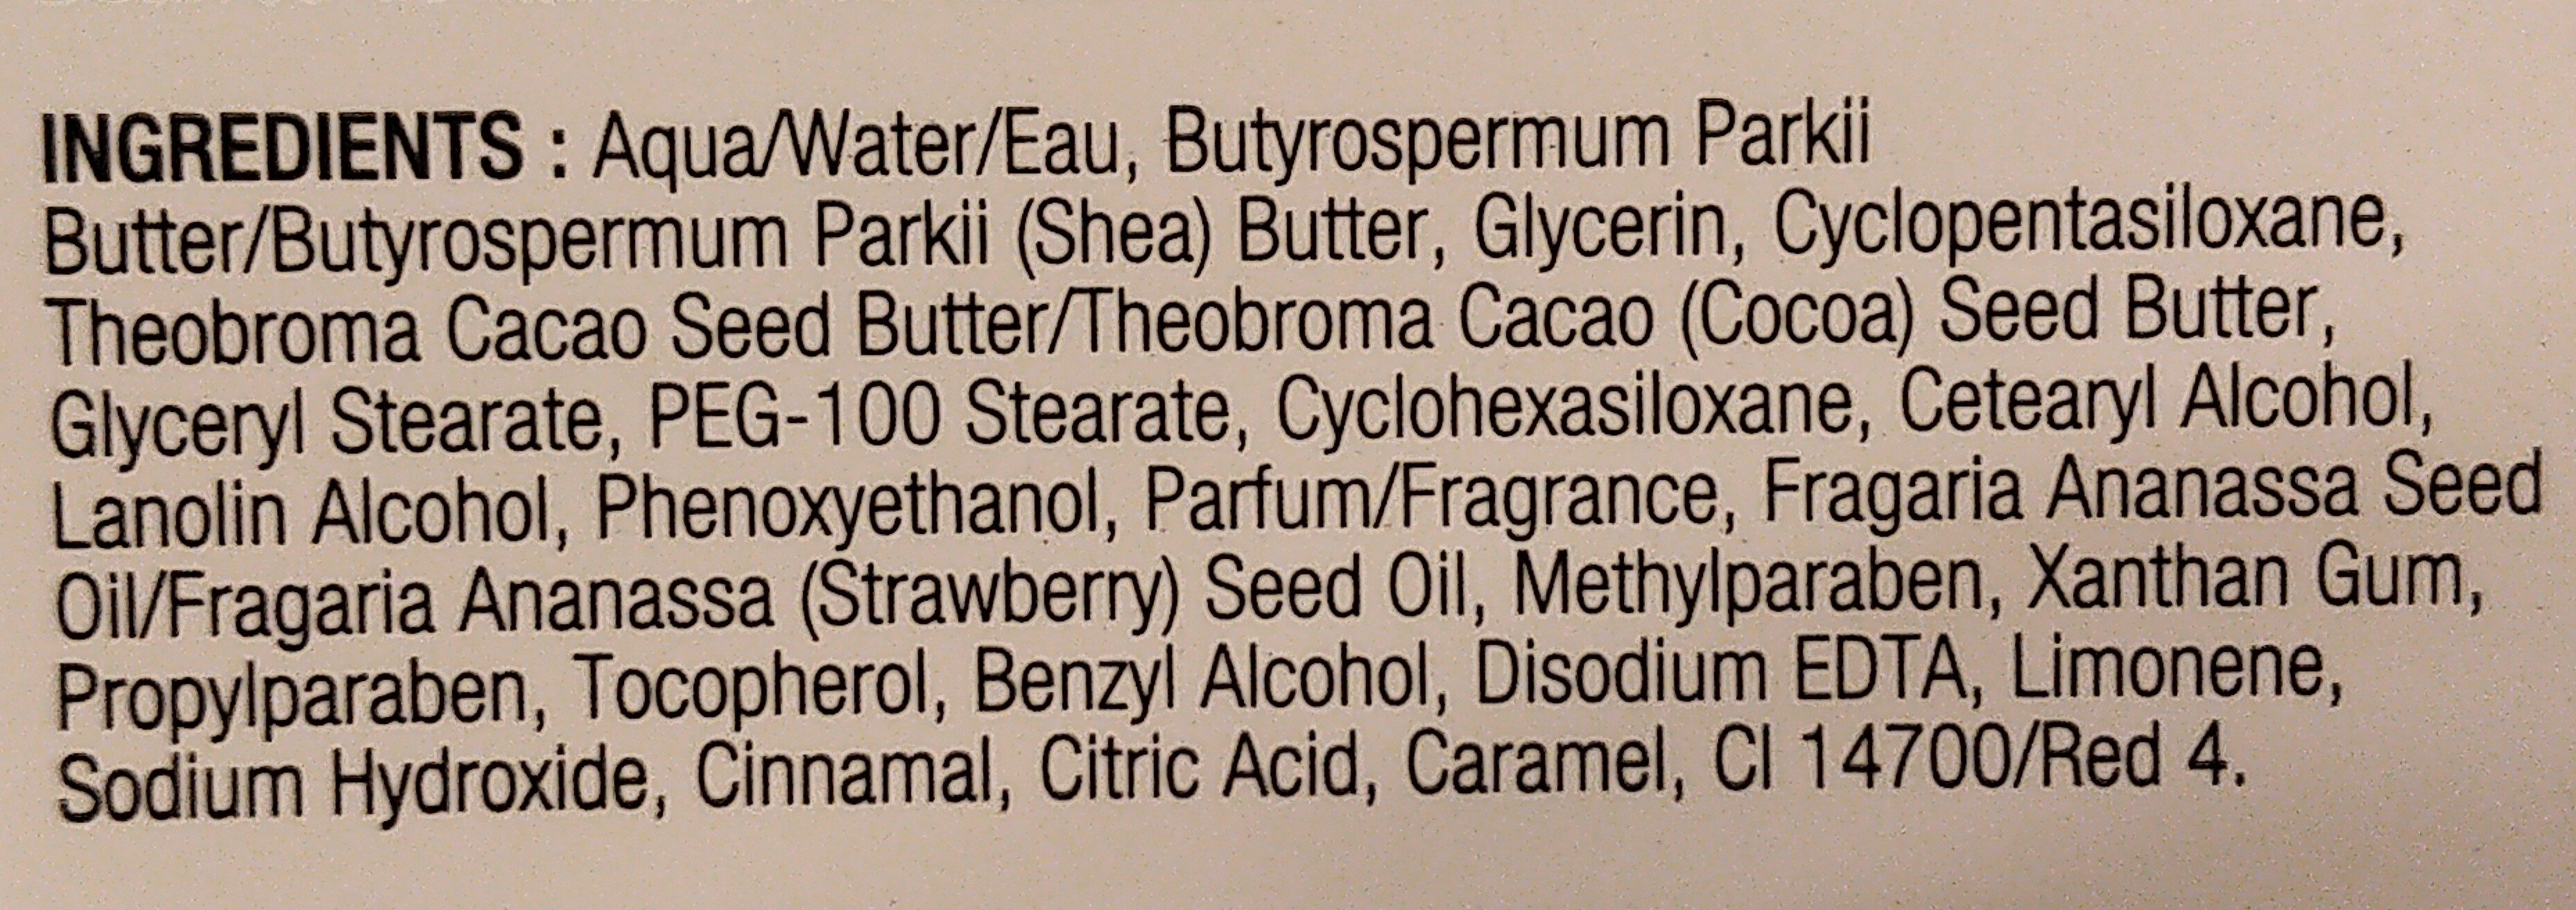 Strawberry Body Butter - Ingredients - en